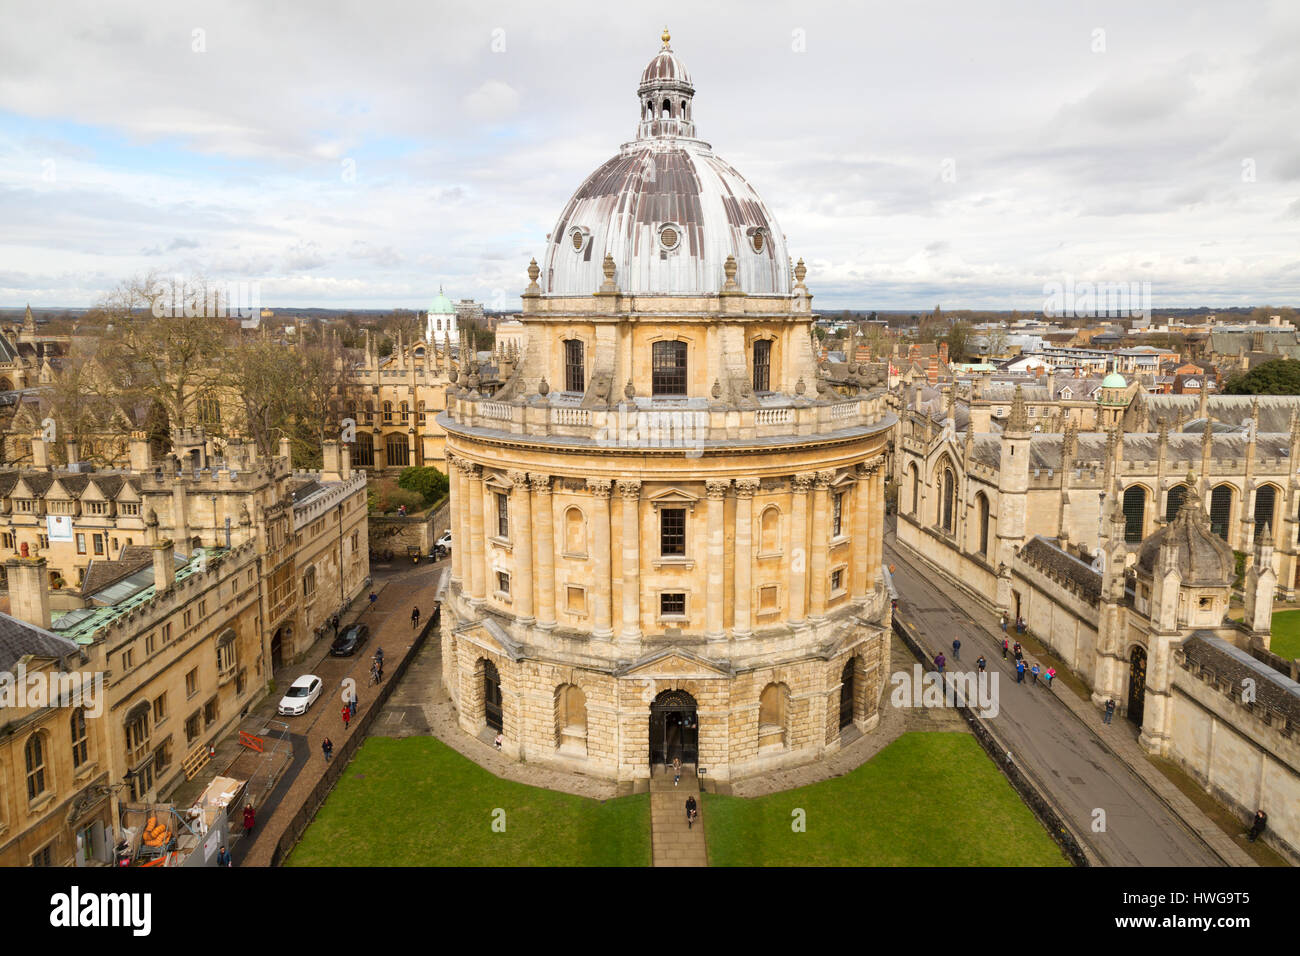 Radcliffe Camera, Oxford, vu depuis le toit de l'église de l'Université d'Oxford, au Royaume-Uni Banque D'Images